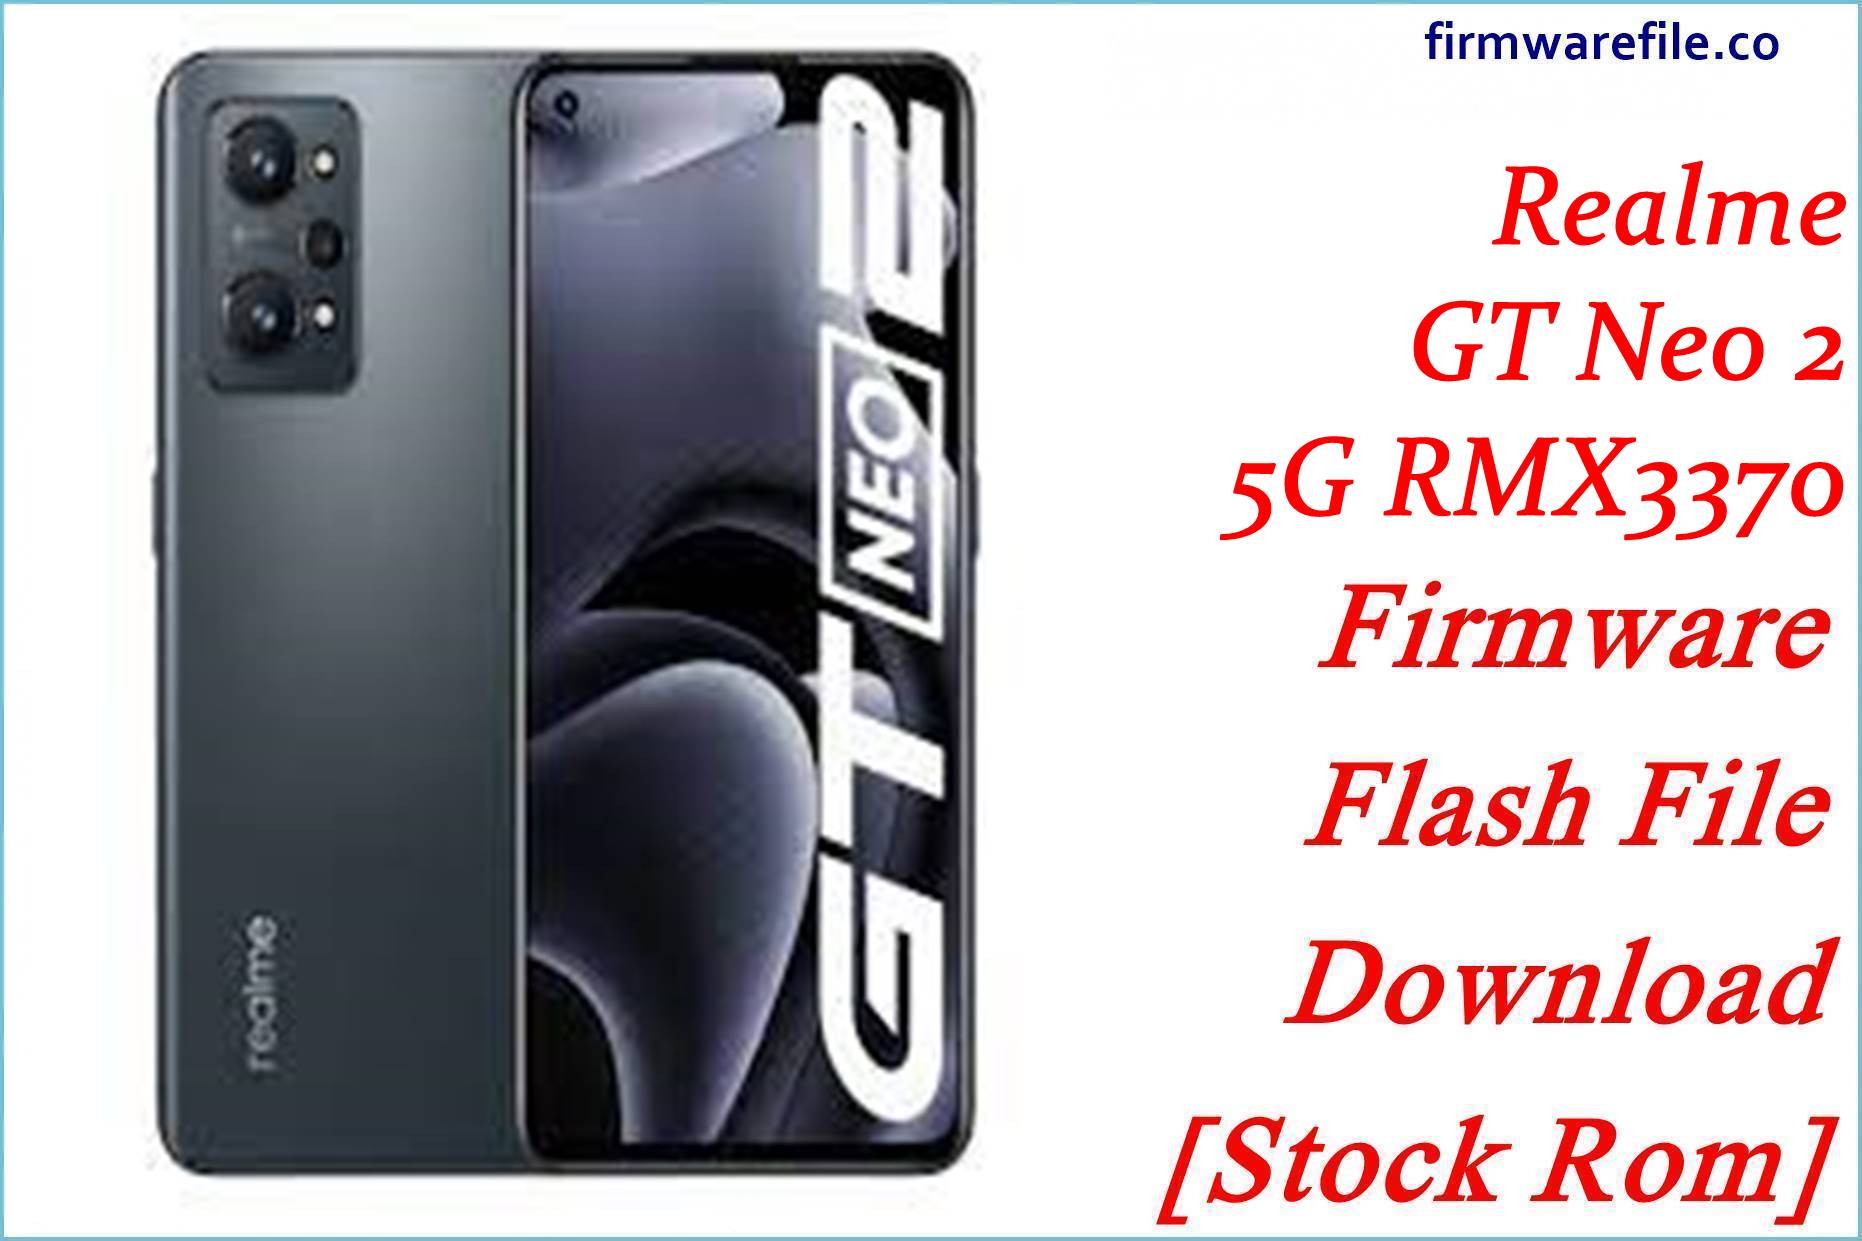 Realme GT Neo 2 5G RMX3370